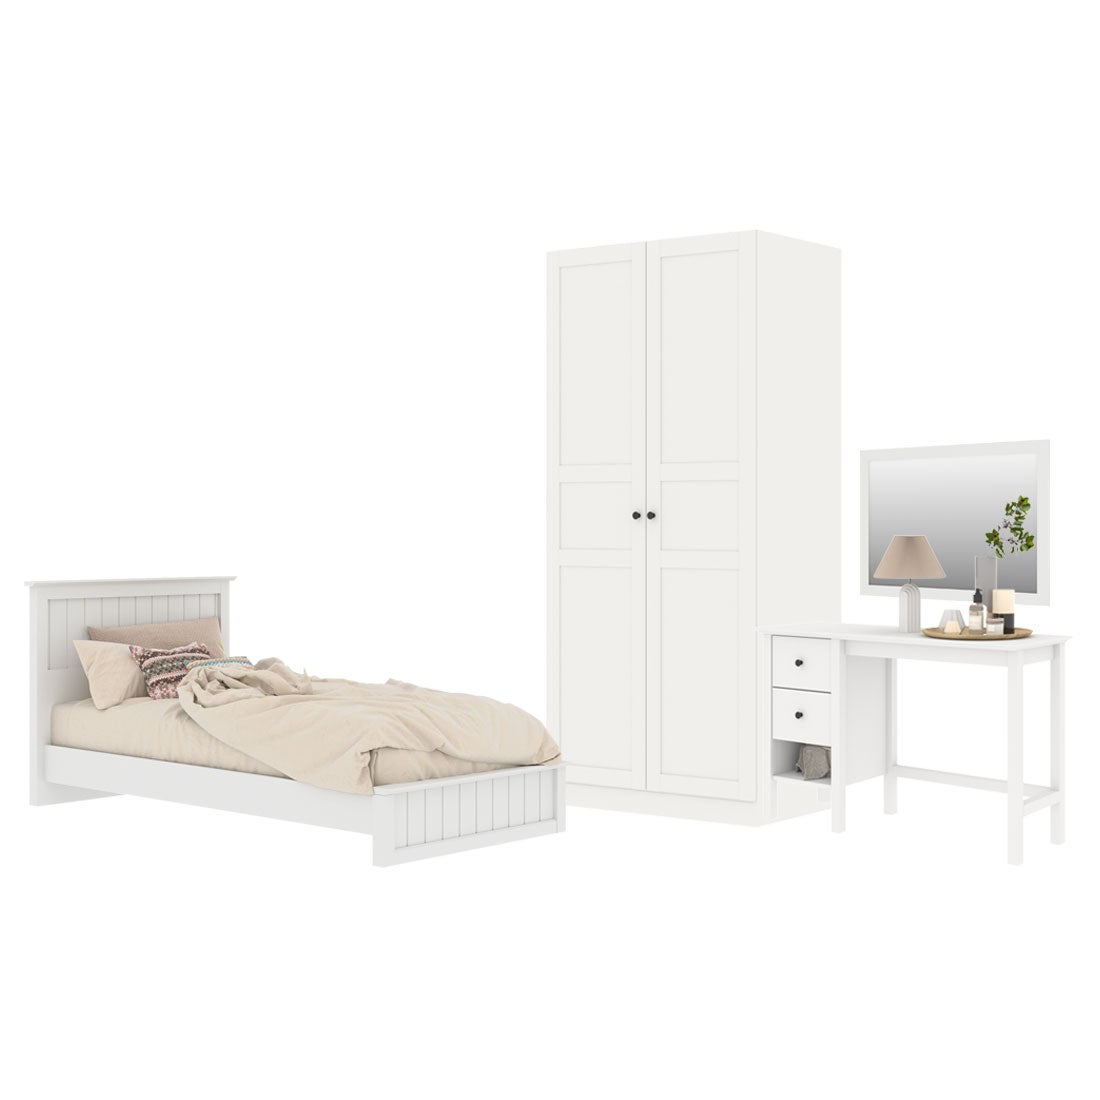 ชุดห้องนอน ขนาด 3.5 ฟุต รุ่น Moneta & ตู้บานเเปิด 90 ซม. สีขาว01